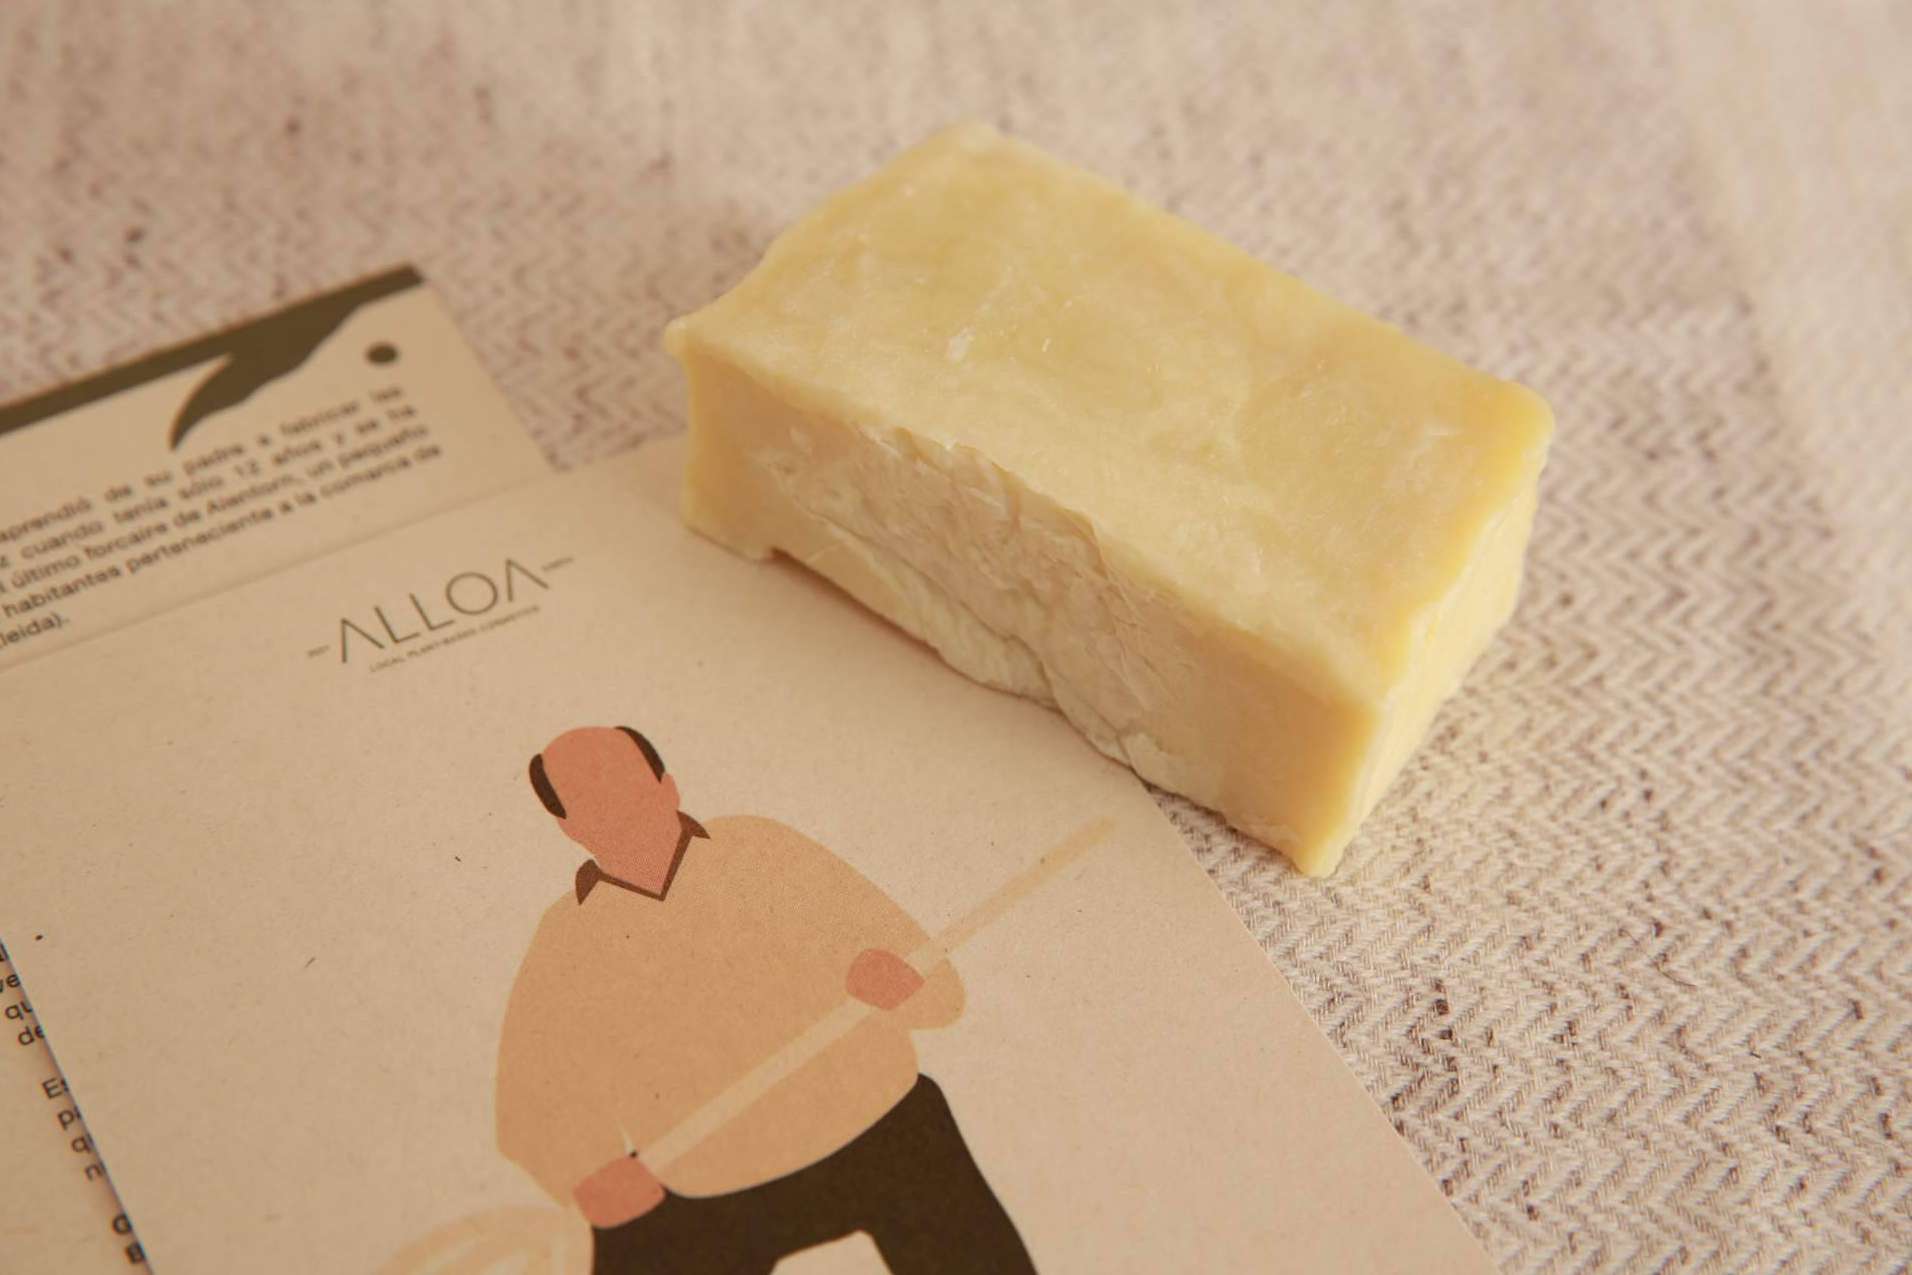 Alloa lanza un proyecto que fomenta la cosmética natural vegana y la cultura rural